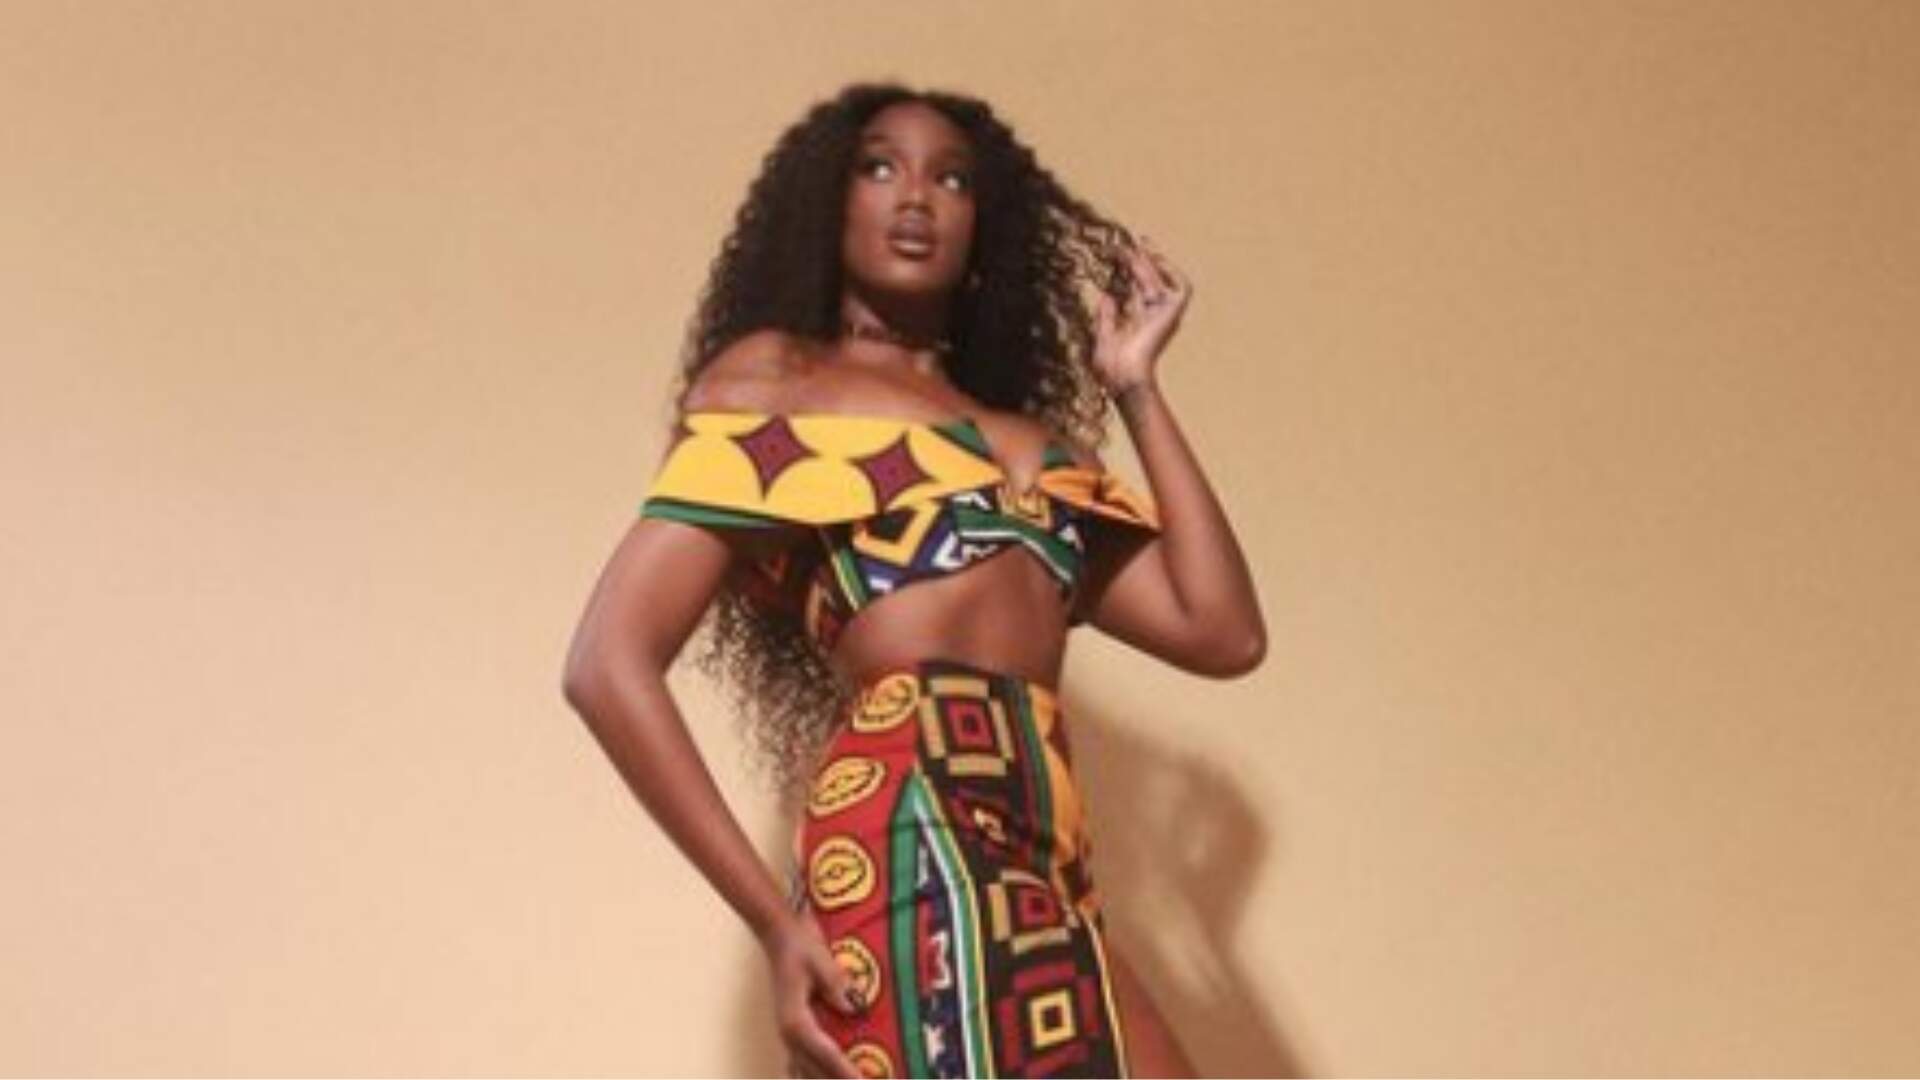 Iza aposta em look poderoso com estampa afro para semifinal do “The Voice Brasil” - Metropolitana FM